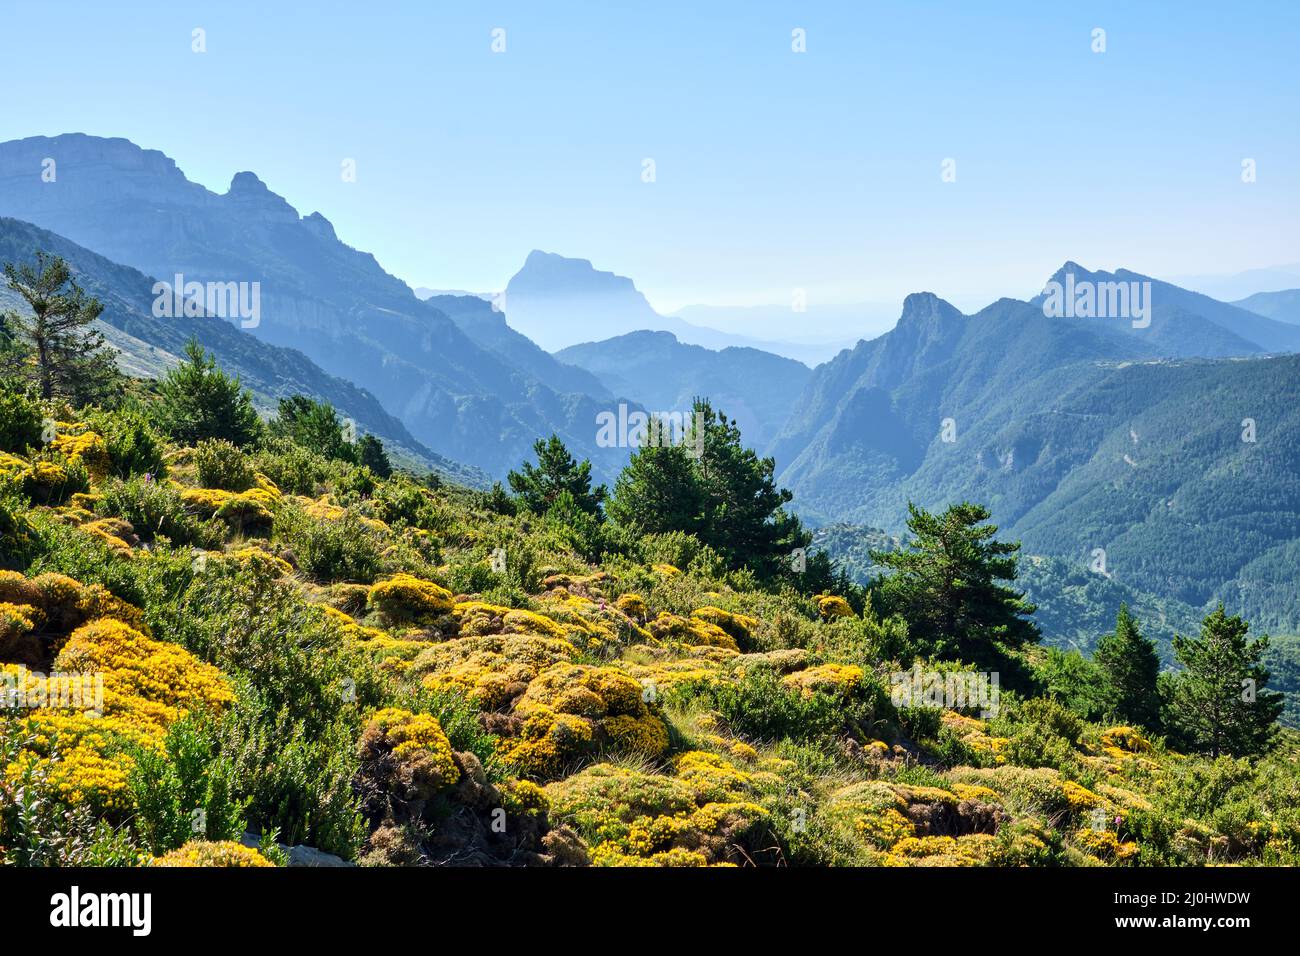 Magnifique paysage dans les Pyrénées espagnoles avec des gorges jaunes fleuries Banque D'Images